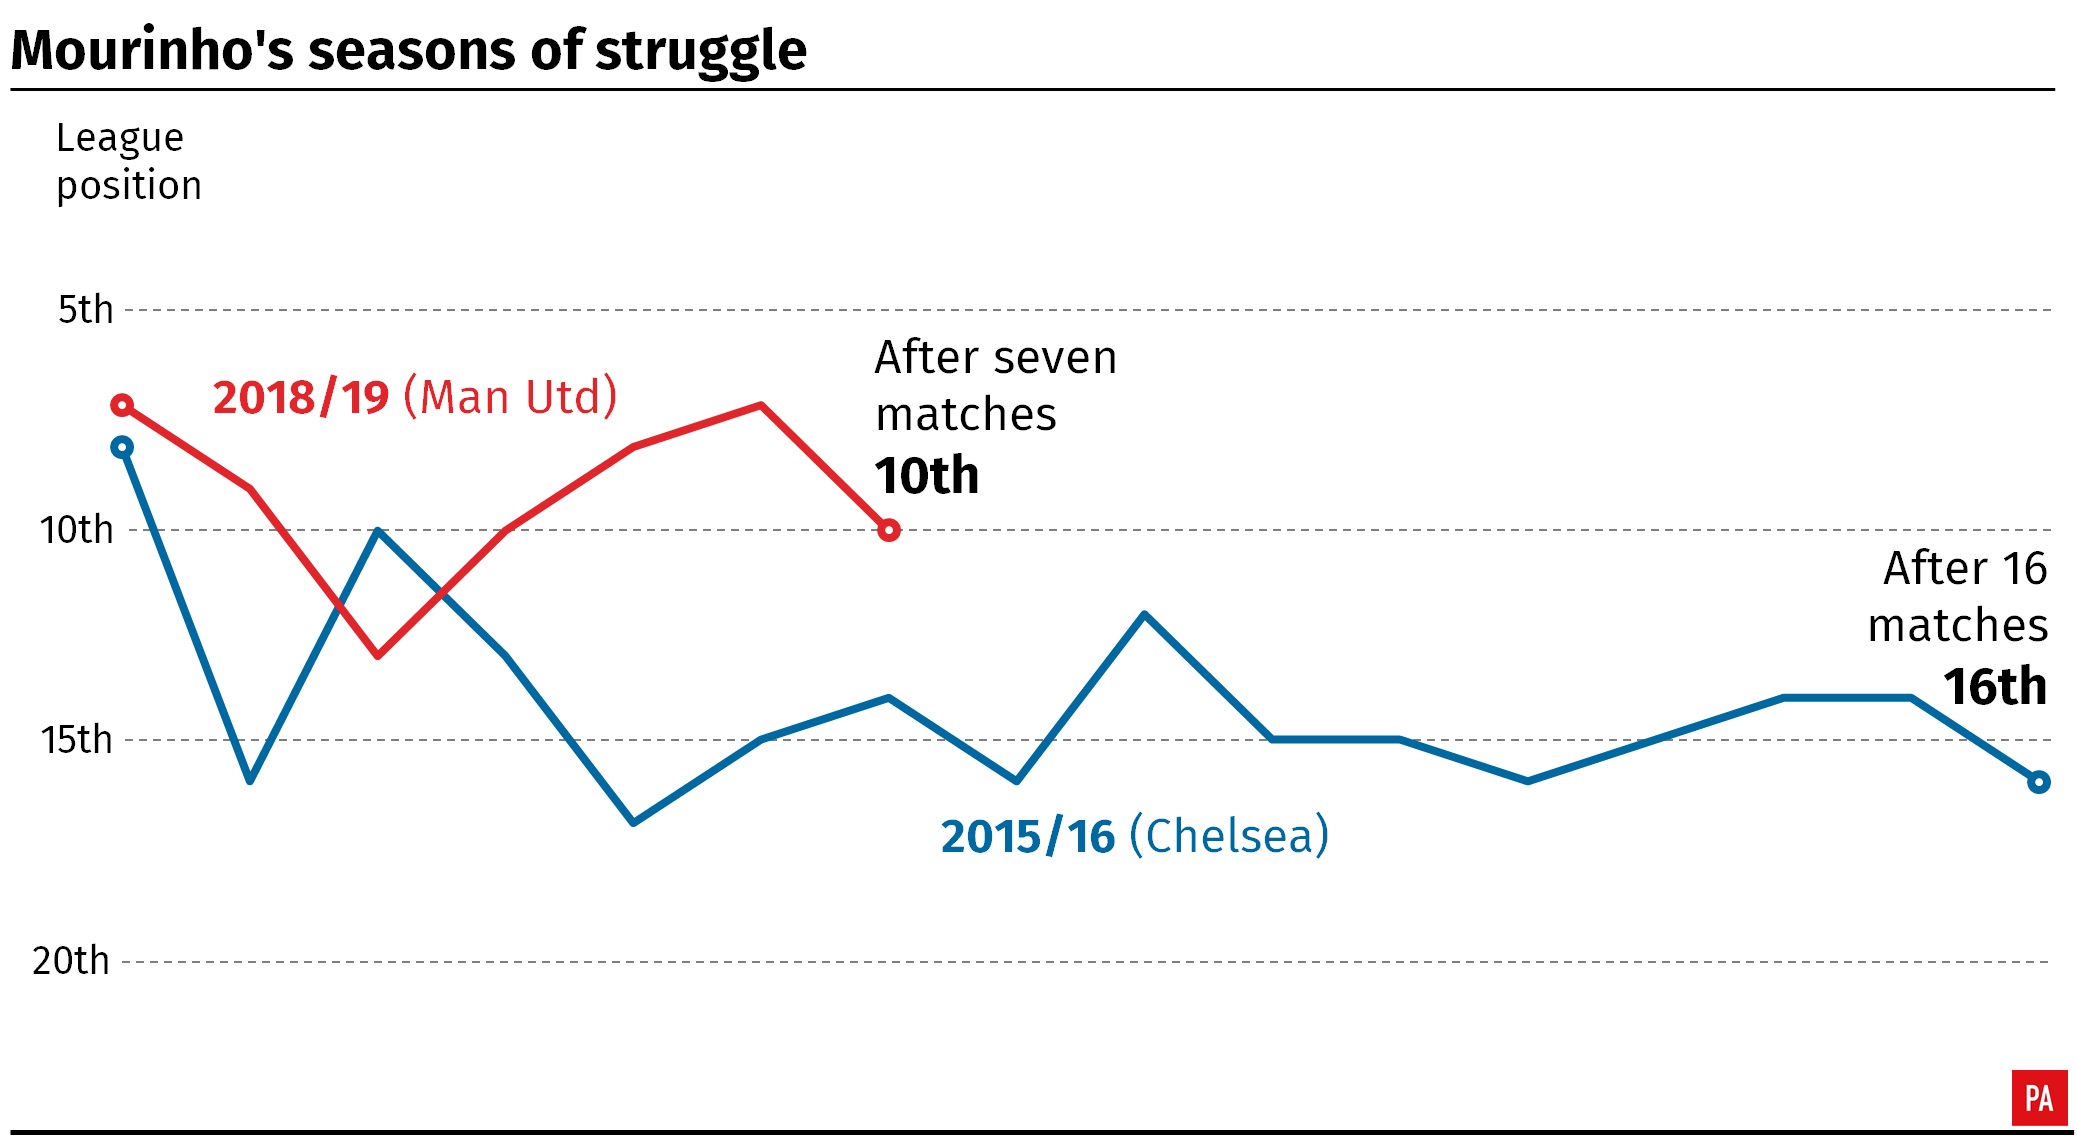 Jose Mourinho's seasons of struggle